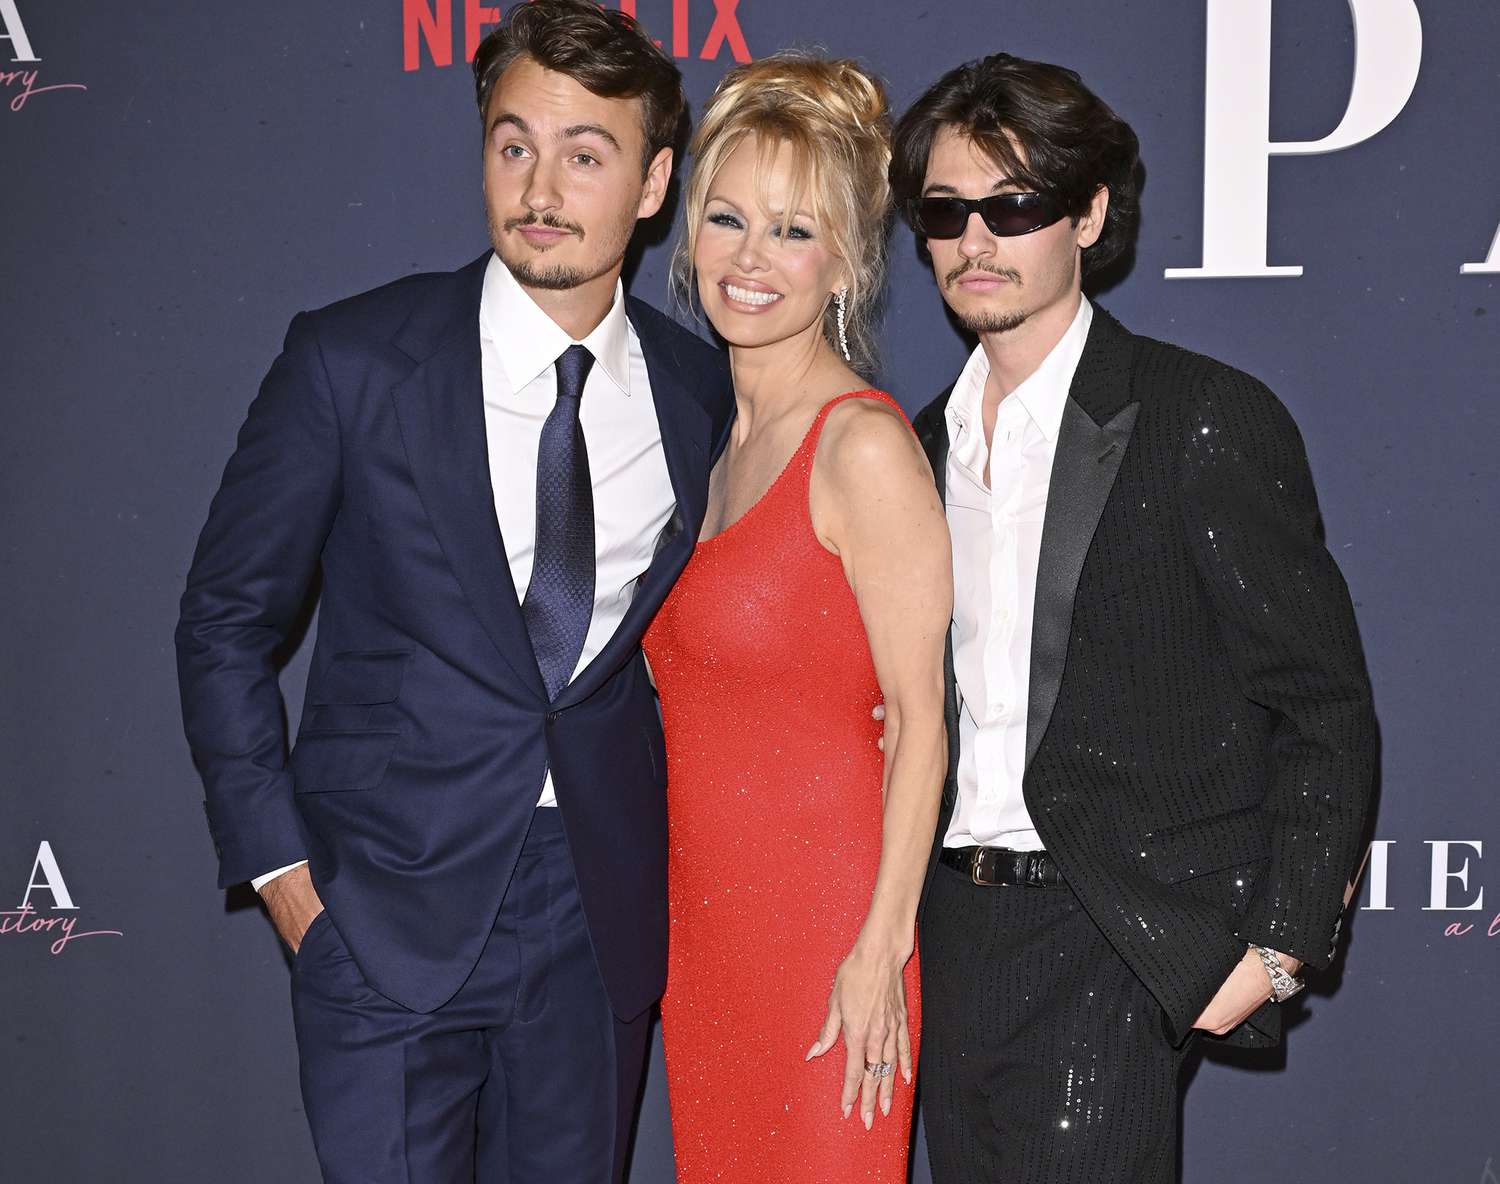 Pamela Anderson célèbre un nouveau documentaire avec ses fils, ainsi que Brad Pitt et George Clooney, Selma Blair et plus